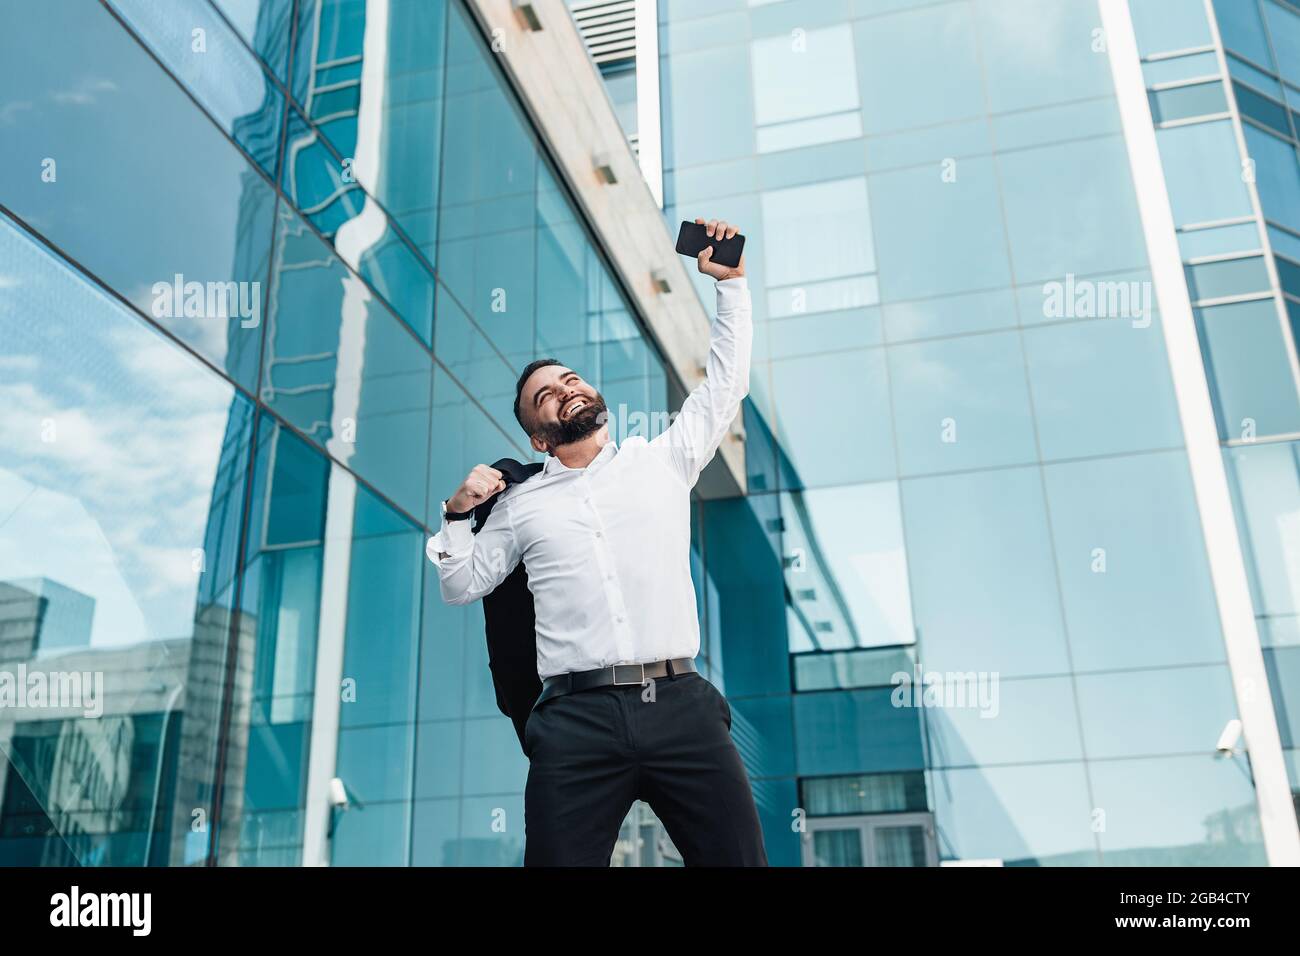 Homme d'affaires ecstatique mature célébrant le succès et levant la main vers le haut, debout à l'extérieur près du centre de bureau, espace vide Banque D'Images